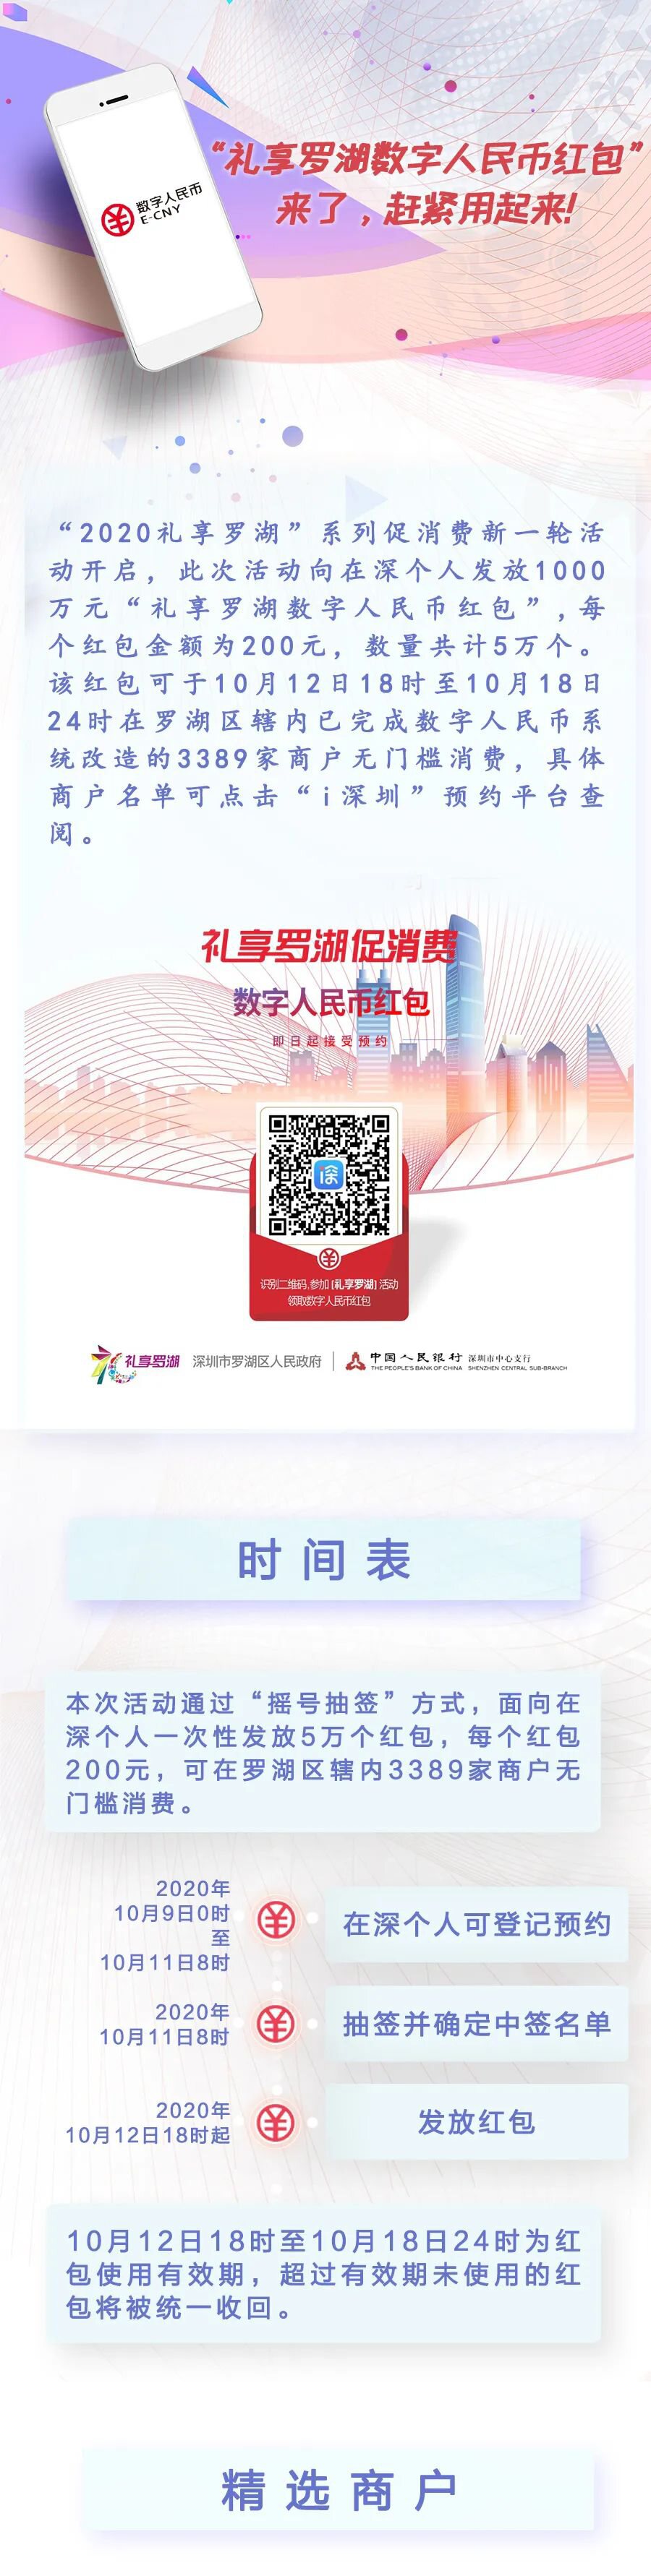 从深圳罗湖数字人民币红包发放看数字人民币的未来